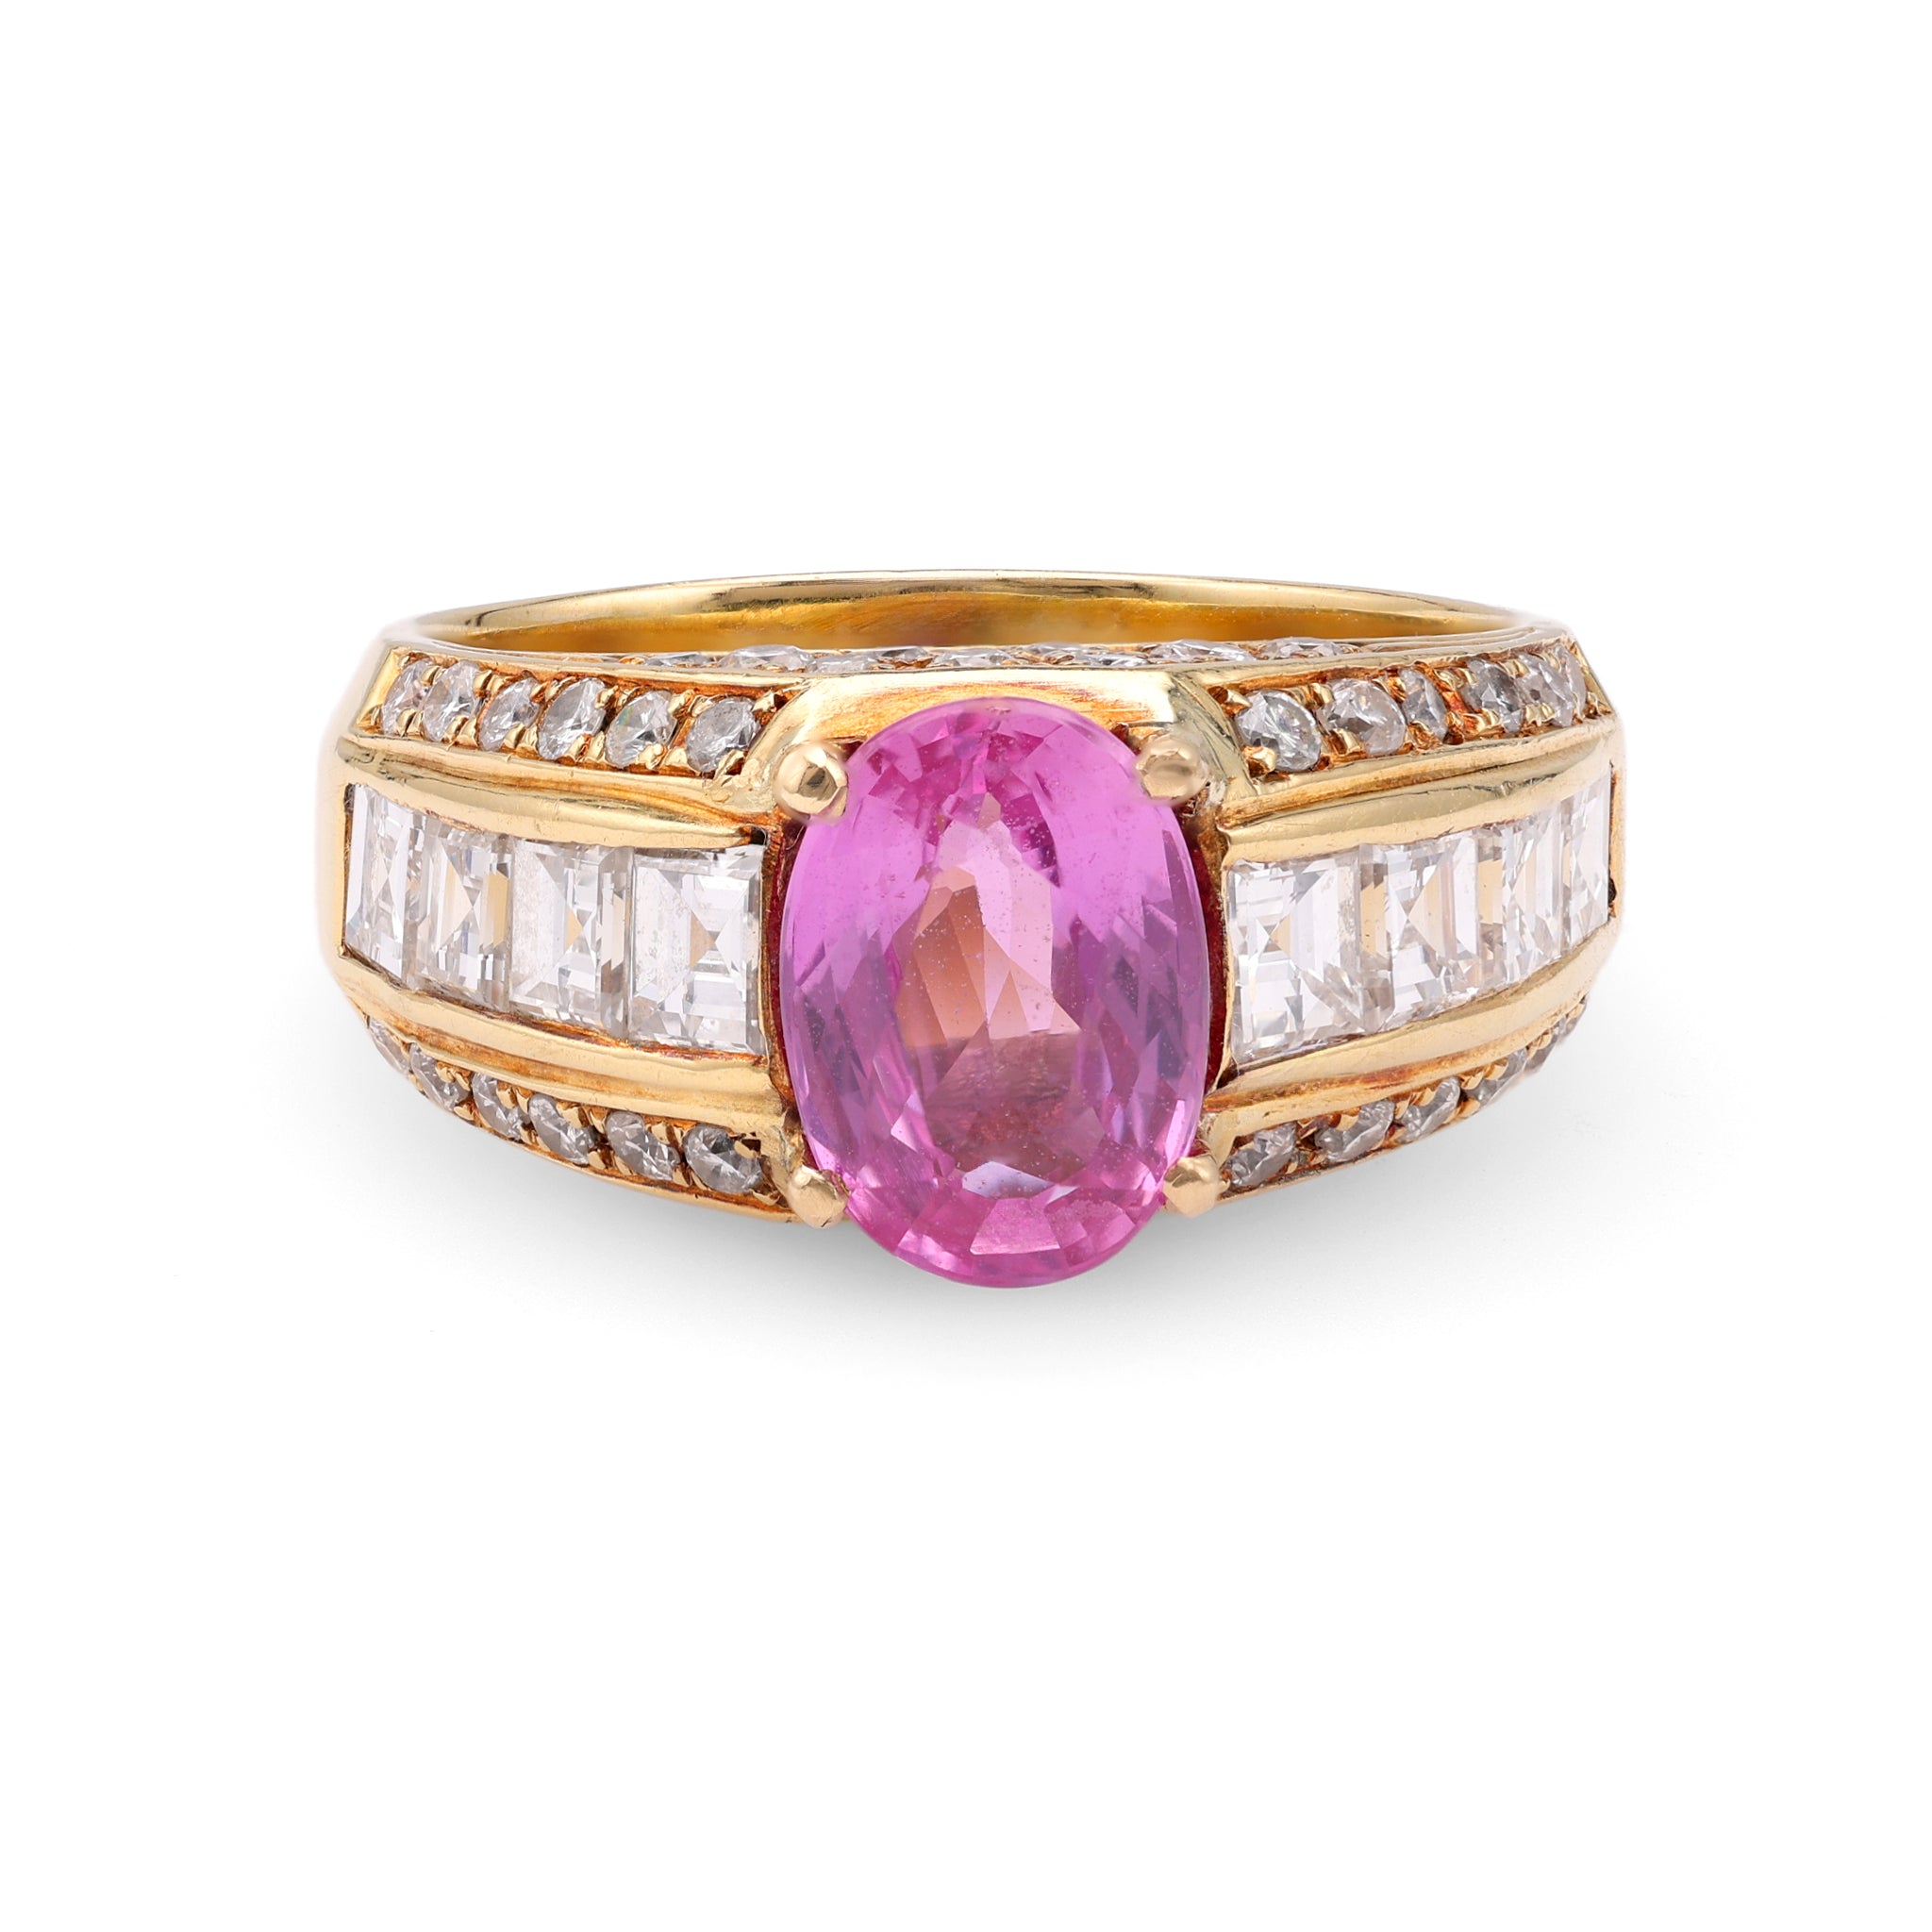 Vintage GIA 1.94 Carat Madagascan Purplish Pink Sapphire Diamond 18k Yellow Gold Ring Rings Jack Weir & Sons   